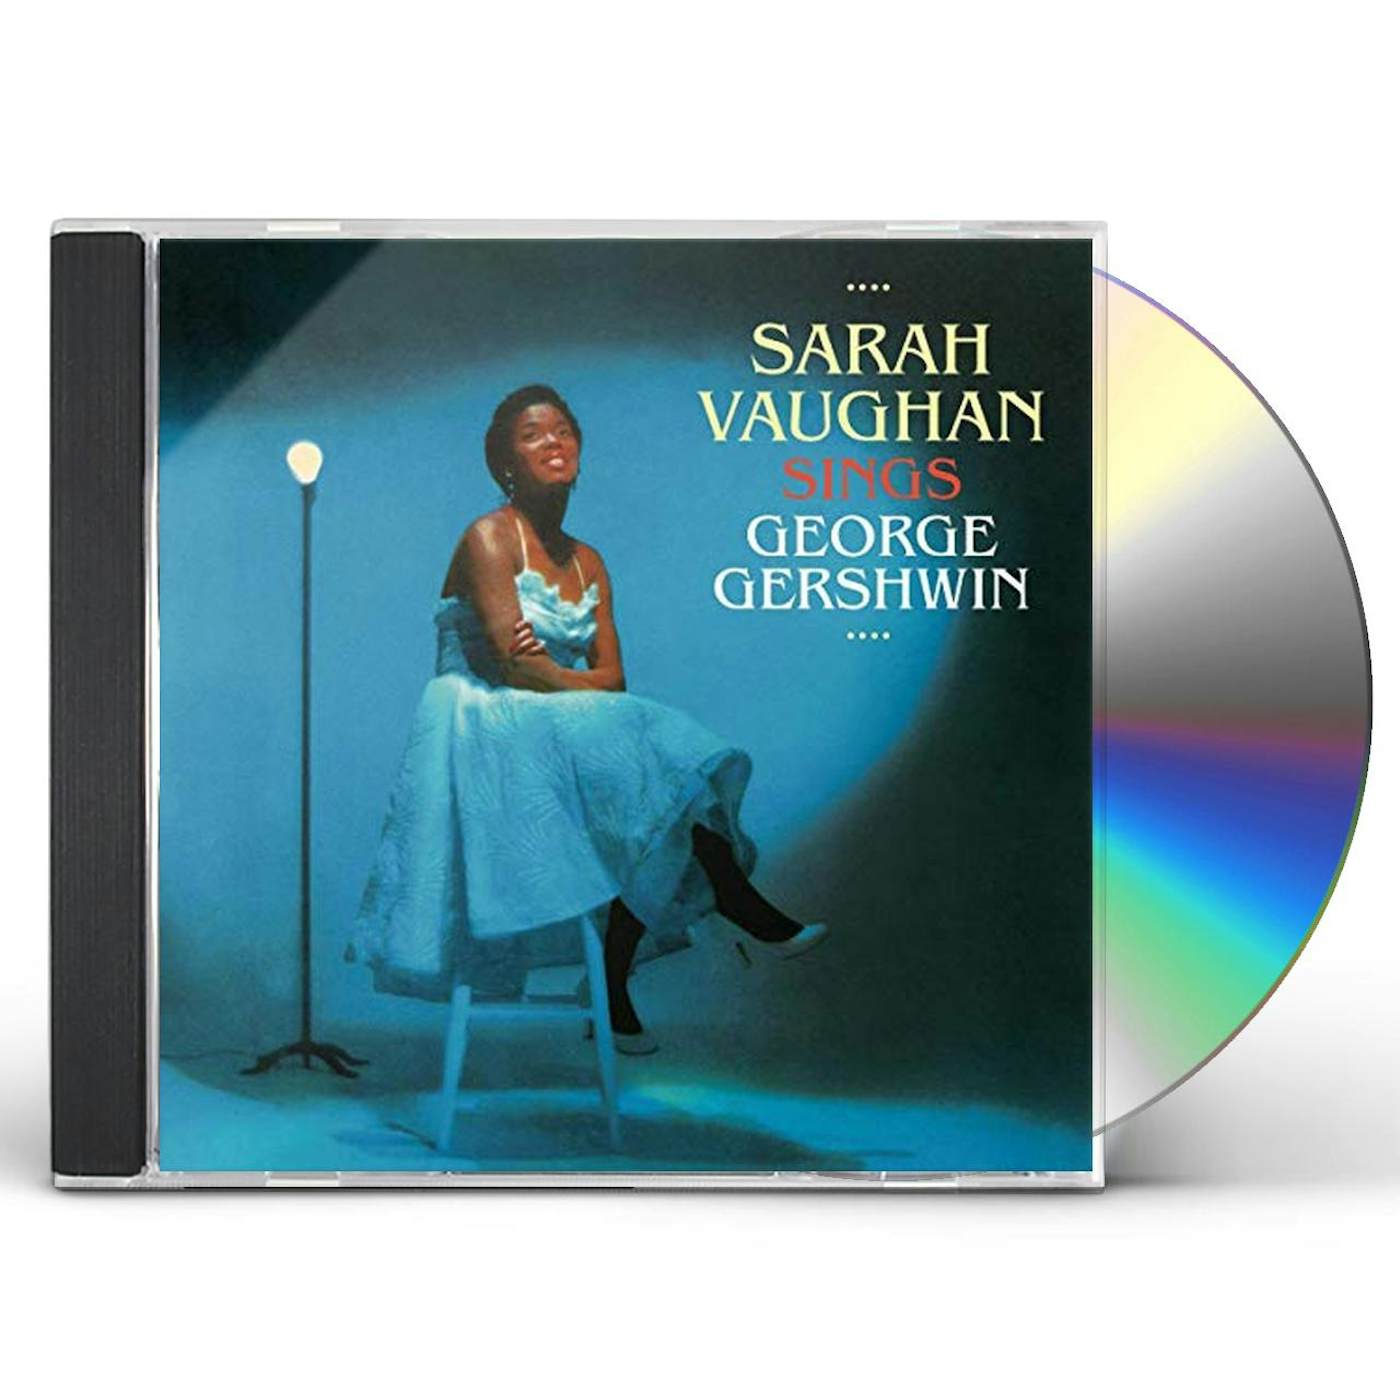 SARAH VAUGHAN SINGS GEORGE GERSHWIN CD